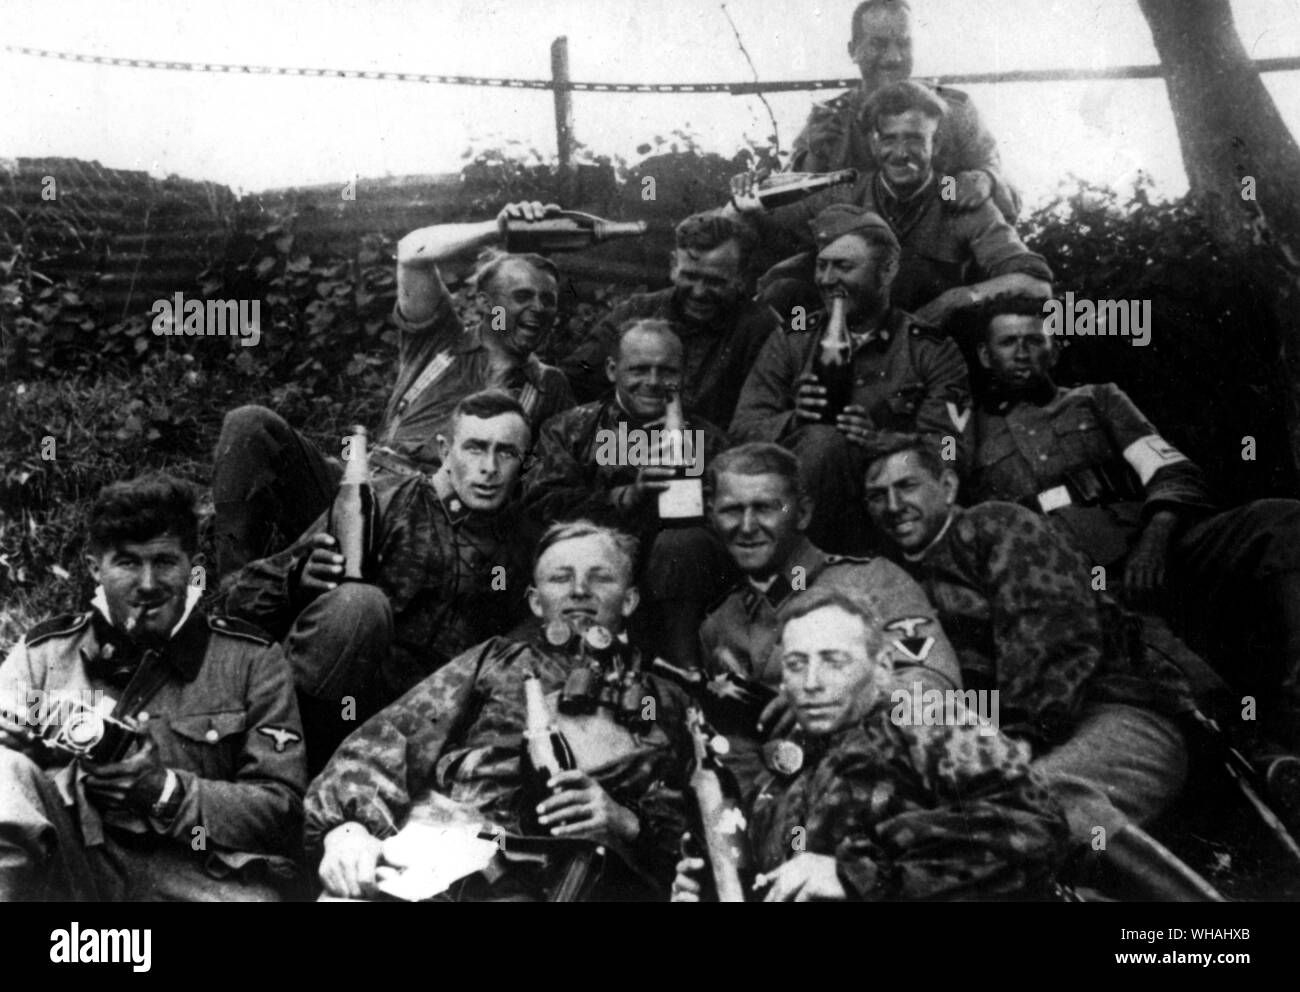 Sur le front russe ; copie de photo trouvée sur corps de soldat nazi montrant des membres des forces d'invasion au cours de premiers jours de l'attaque contre l'URSS (en album, SS Allemands boozy bouteilles agitant !) Banque D'Images